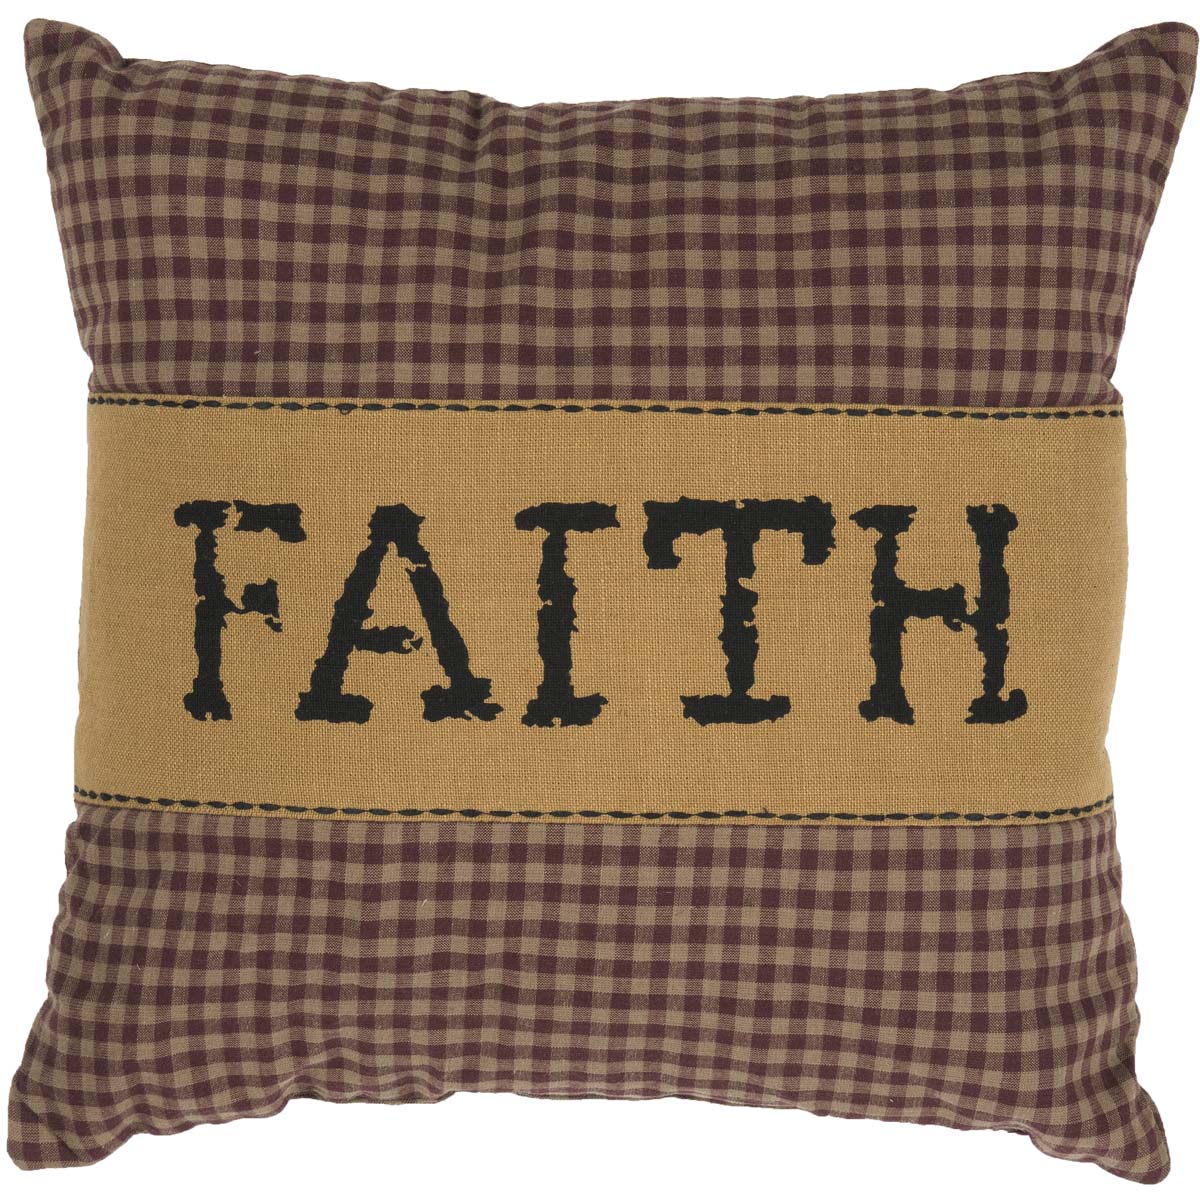 Heritage Farms Faith Pillow 12x12